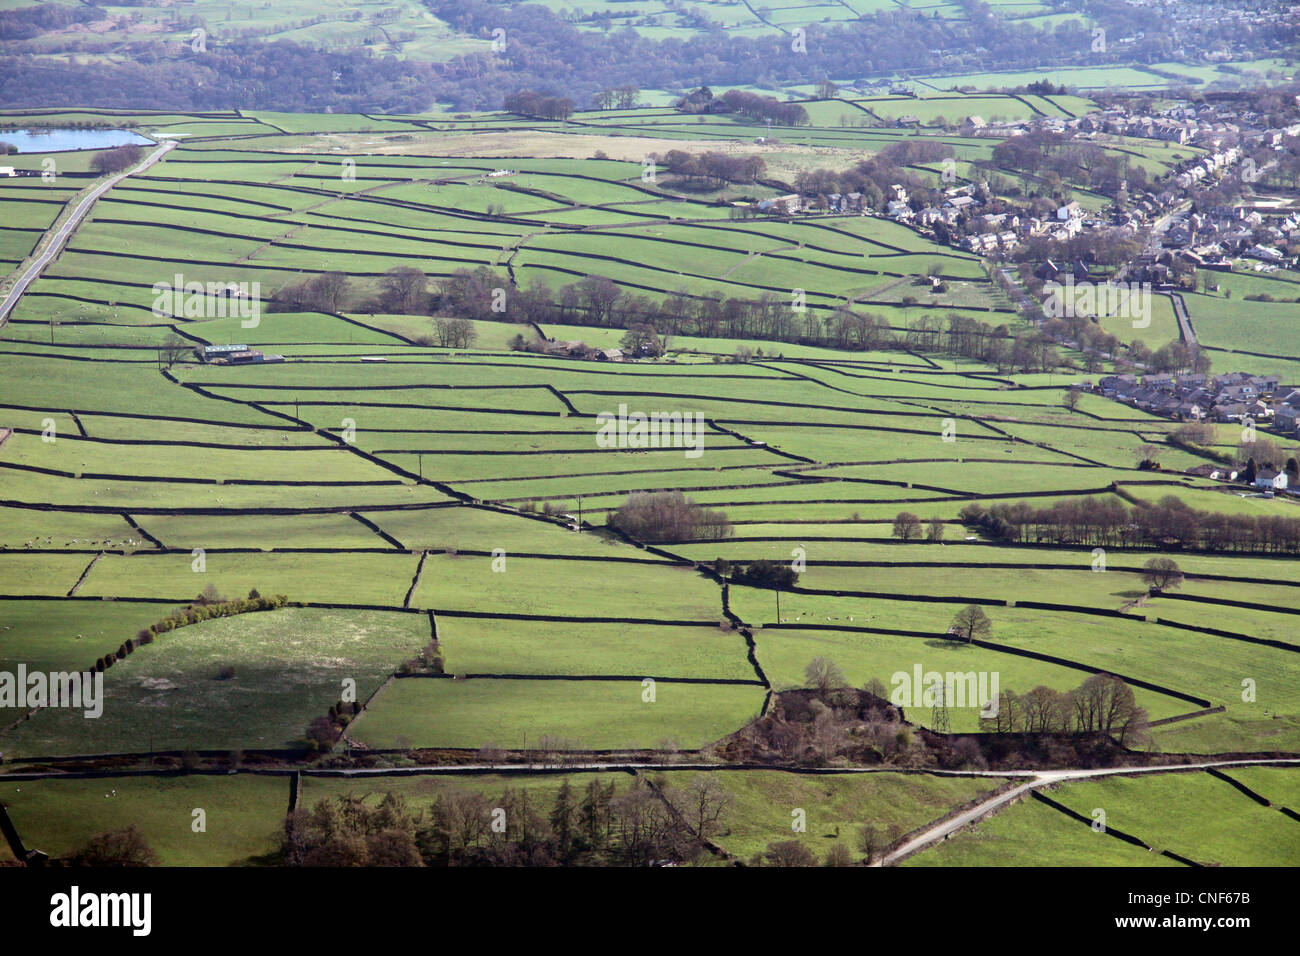 Vista aerea di inglese paesaggio rurale con i campi delimitati da muri in pietra a secco Foto Stock